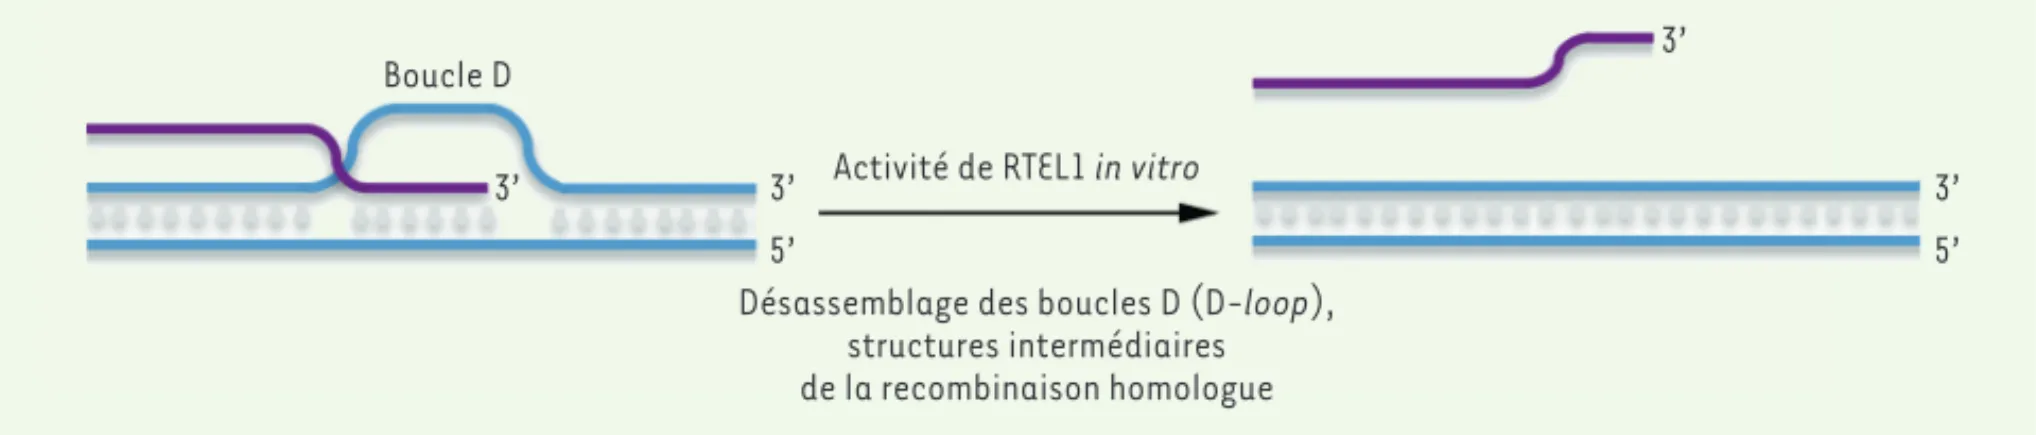 Figure 1. Modèle proposé de l’activité de RTEL1 in vitro comme anti-recombinase. L’activité hélicase de RTEL1, dépendante de l’hydrolyse de l’ATP,  permet de désassembler les structures intermédiaires de recombinaison homologue (D-loop).